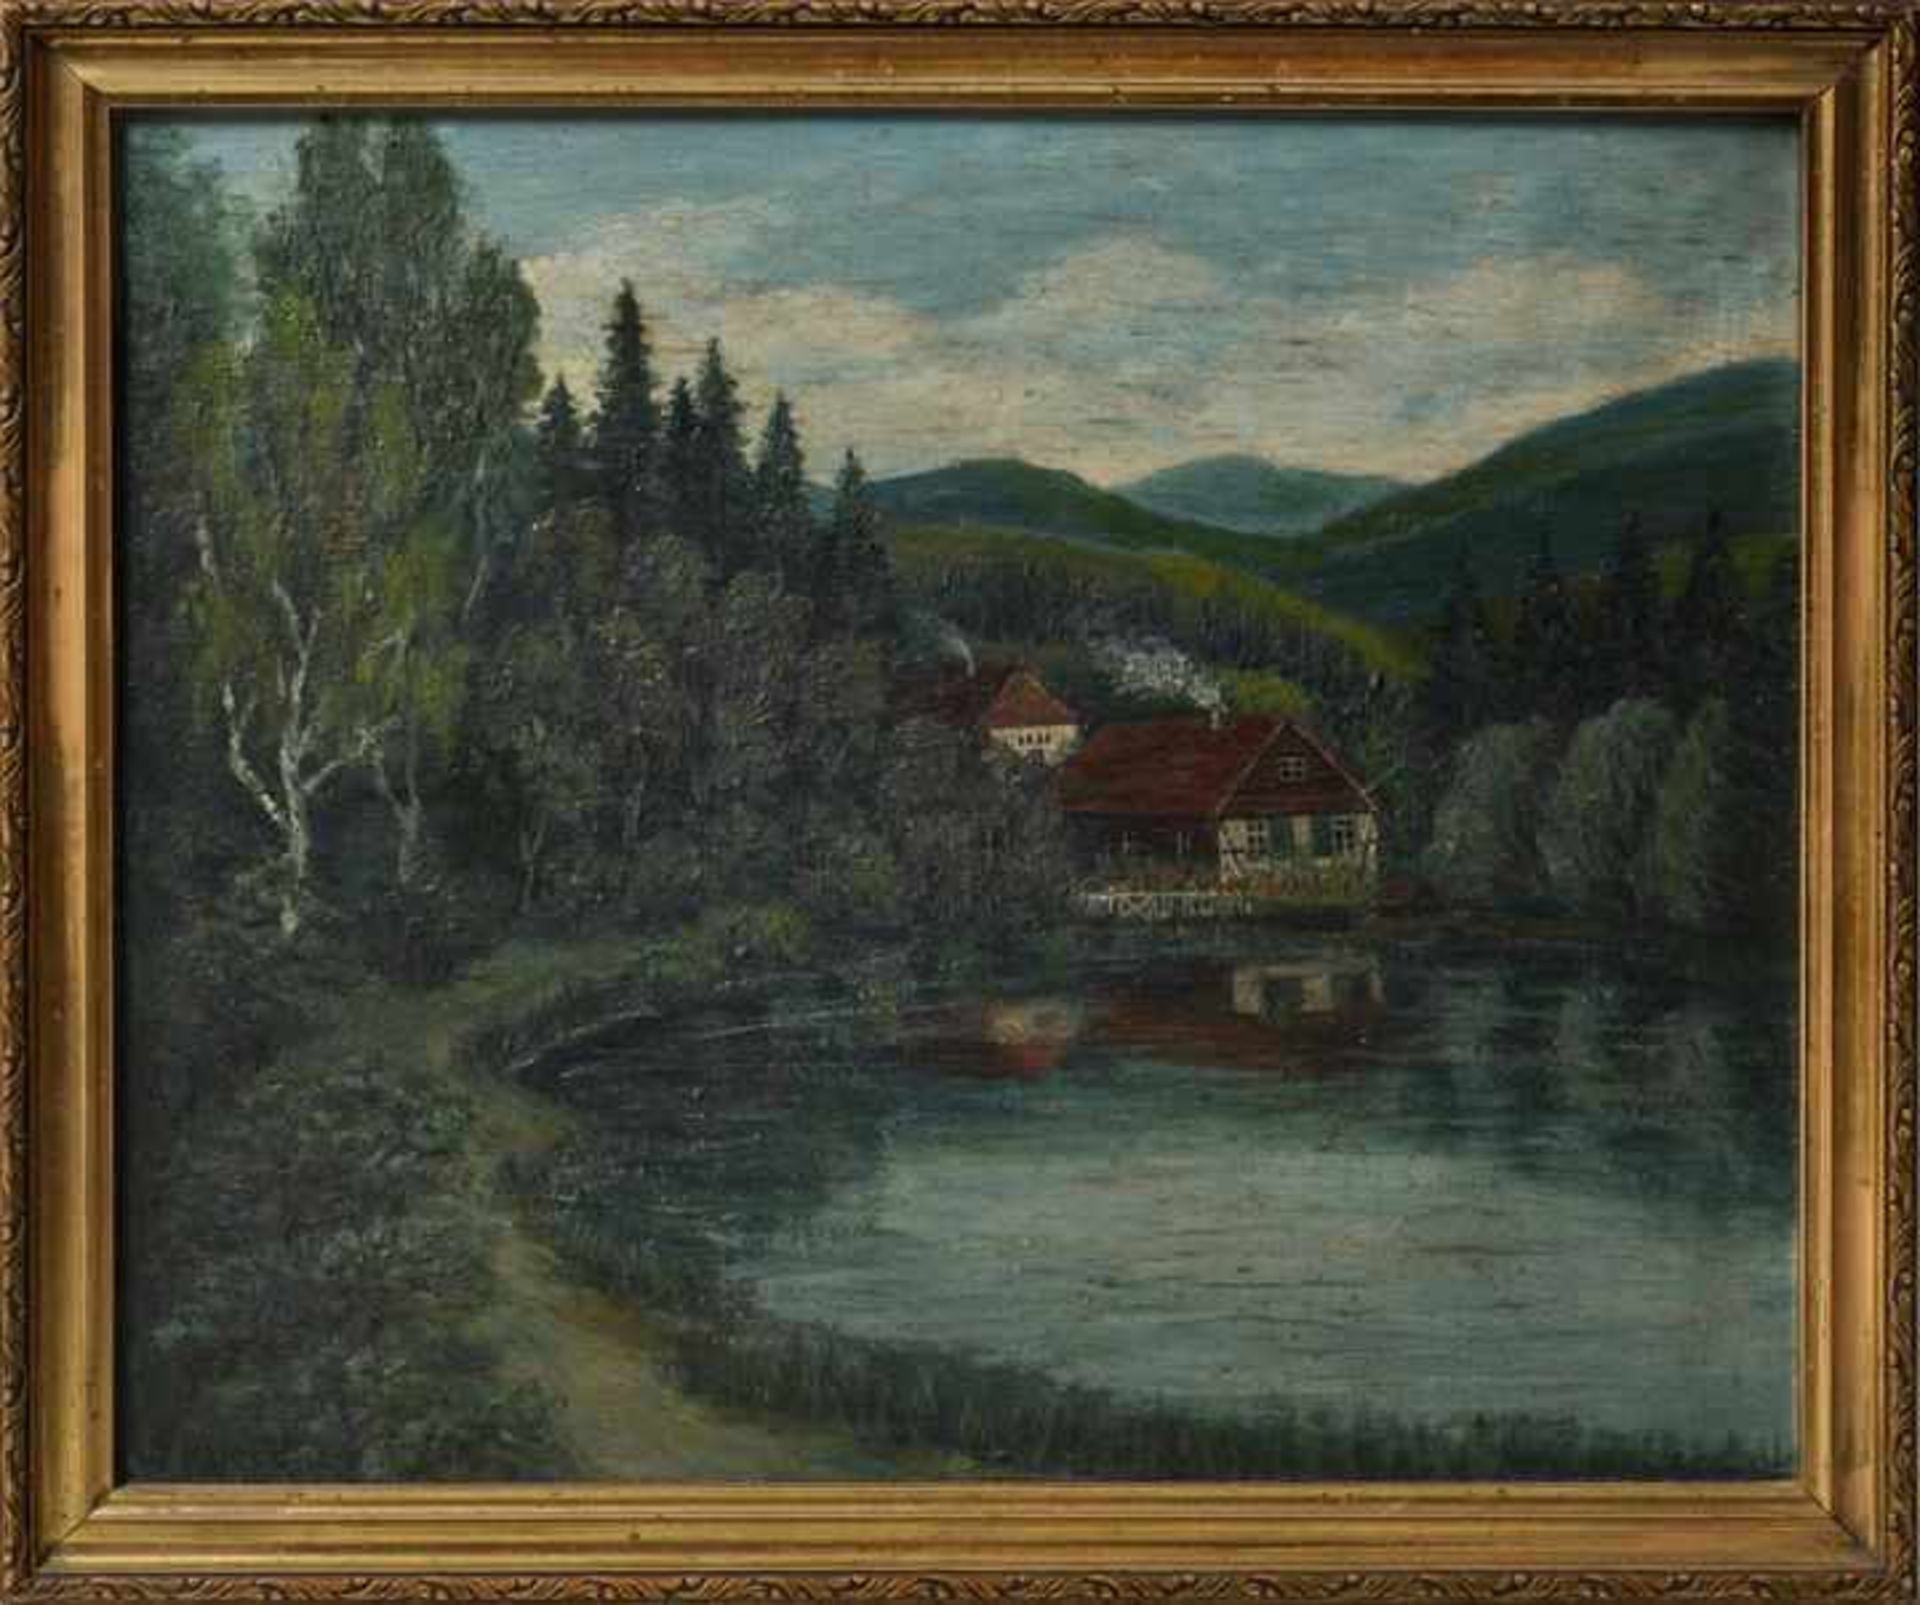 Unbekannter Künstler (Kaiser, W.)Kleines Haus am See. Öl auf Holz.Ohne Jahr. Signiert u.li. W. - Bild 2 aus 3